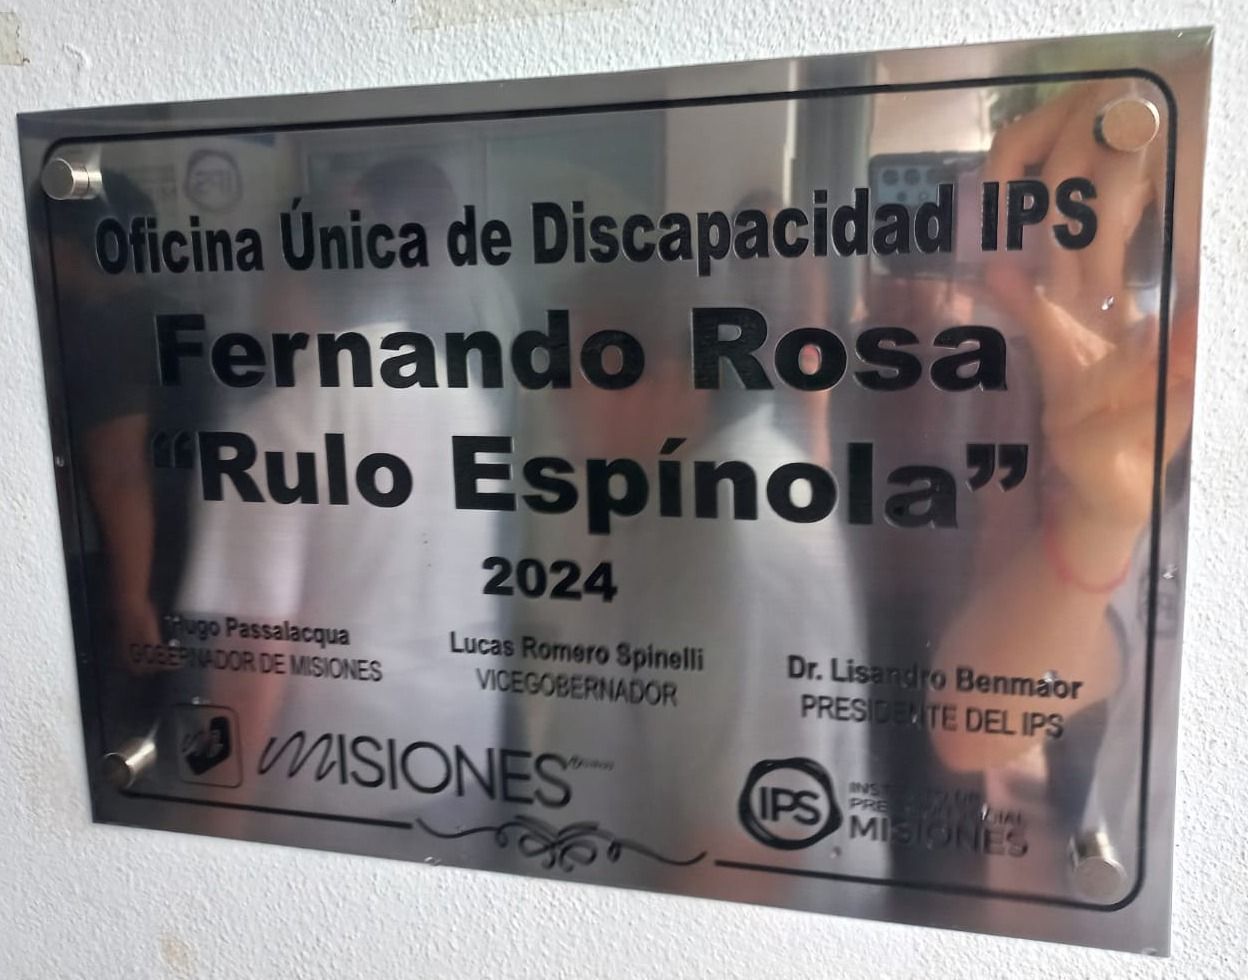 La Oficina Única de Discapacidad del IPS lleva el nombre del actor Fernando Rosa.